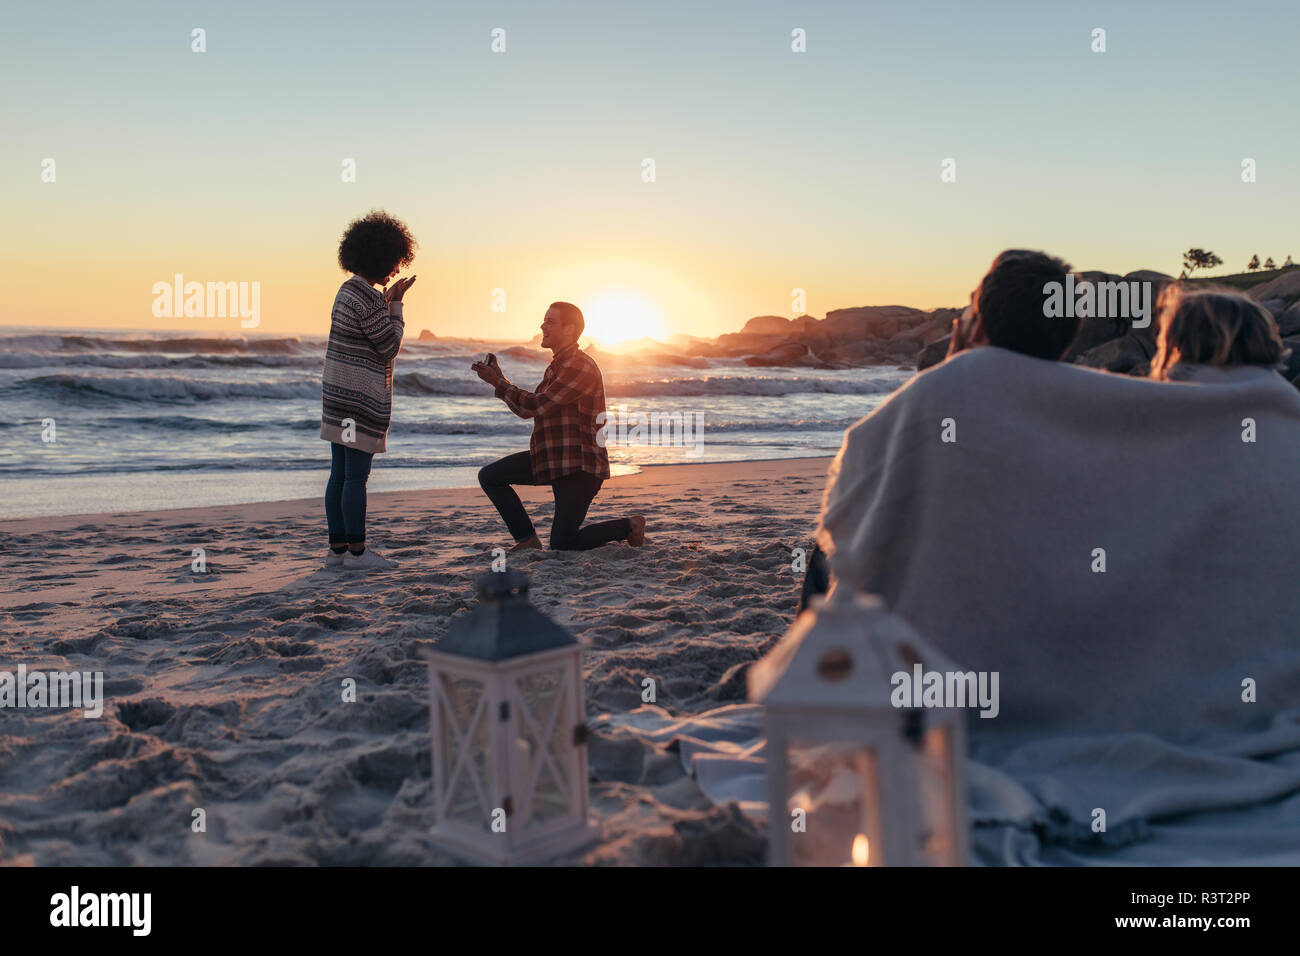 Mann Schlagt Frau Am Meer Begeistert Heiratsantrag Bei Sonnenuntergang Strand Mit Freunden Sitzen Vor In Eine Decke Gewickelt Stockfotografie Alamy